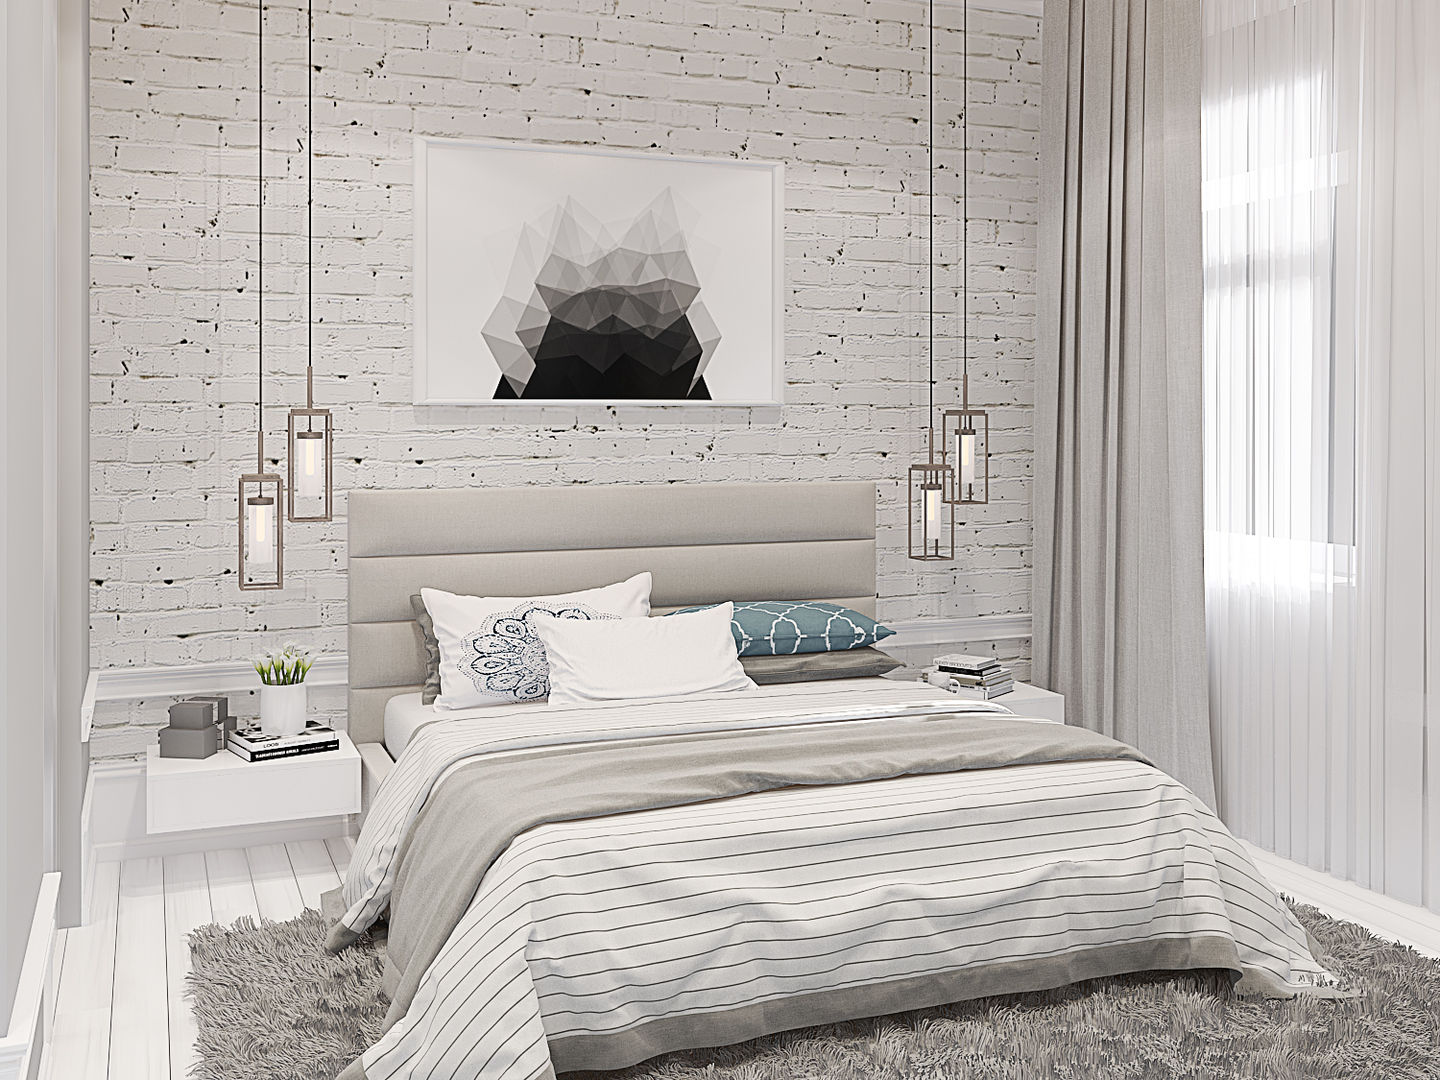 Неоклассика с элементами прованса , design4y design4y Classic style bedroom